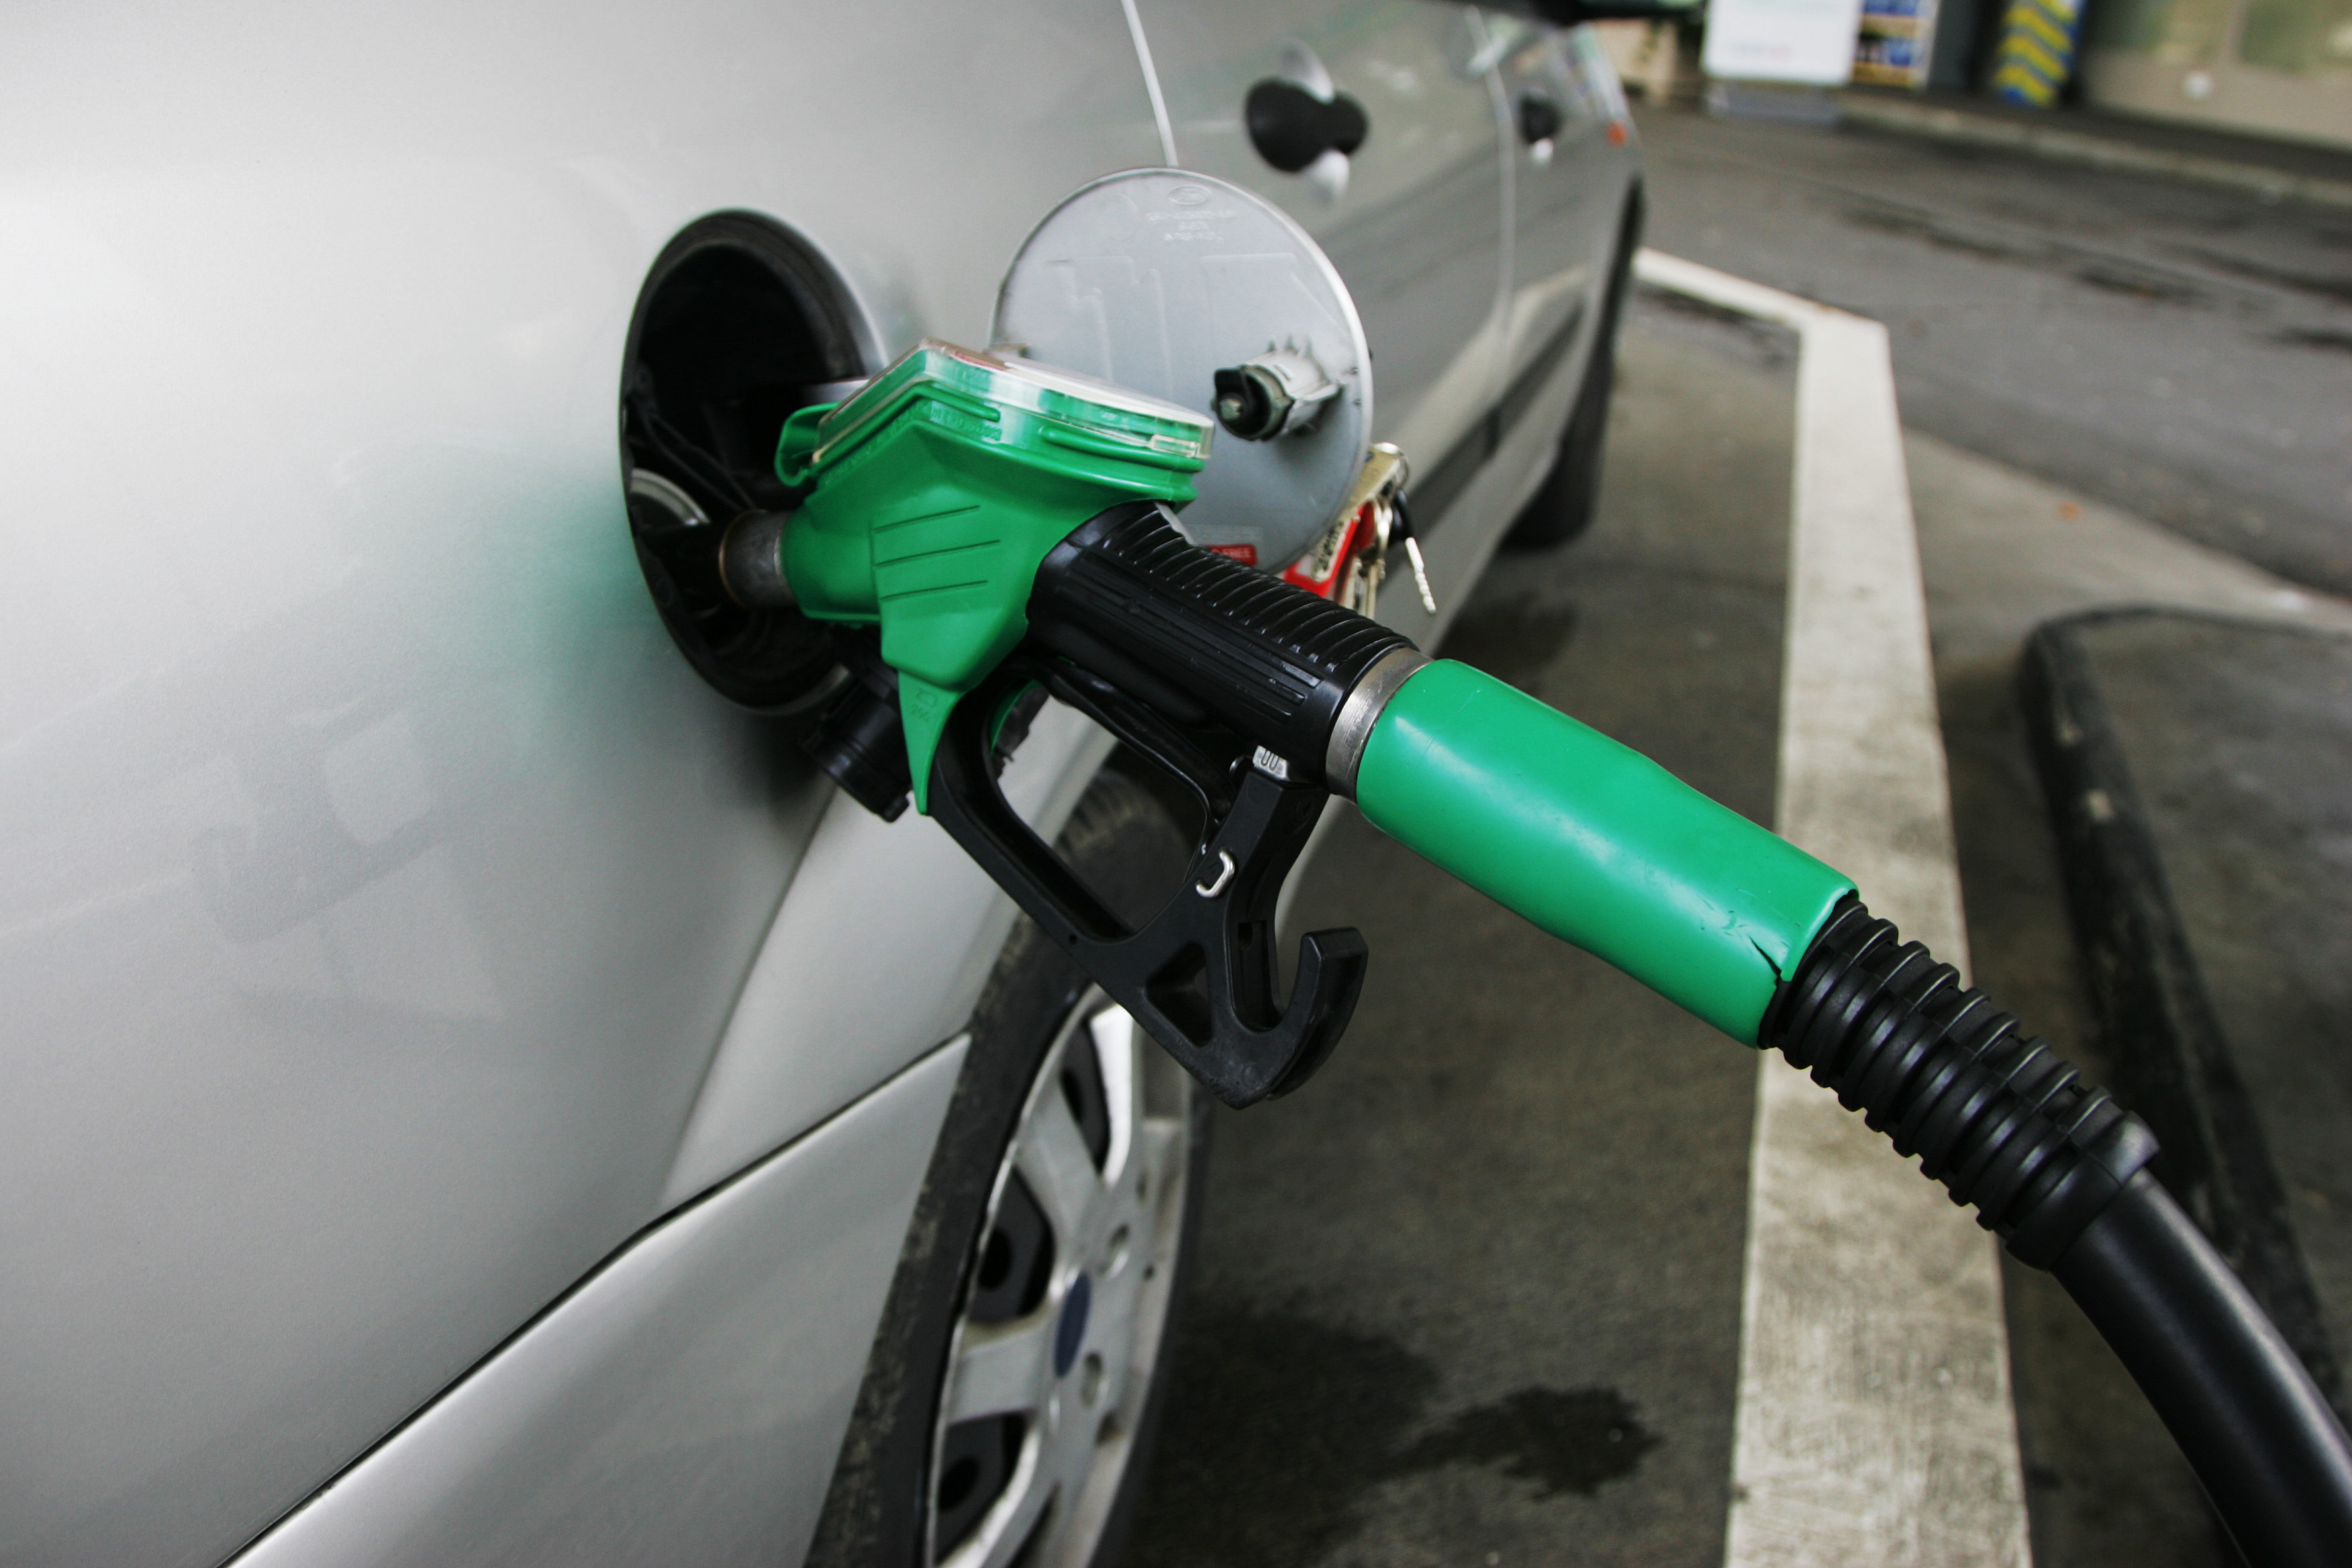 Petrol price decreased by Rs 1, diesel price decreased by Rs 2 per litre